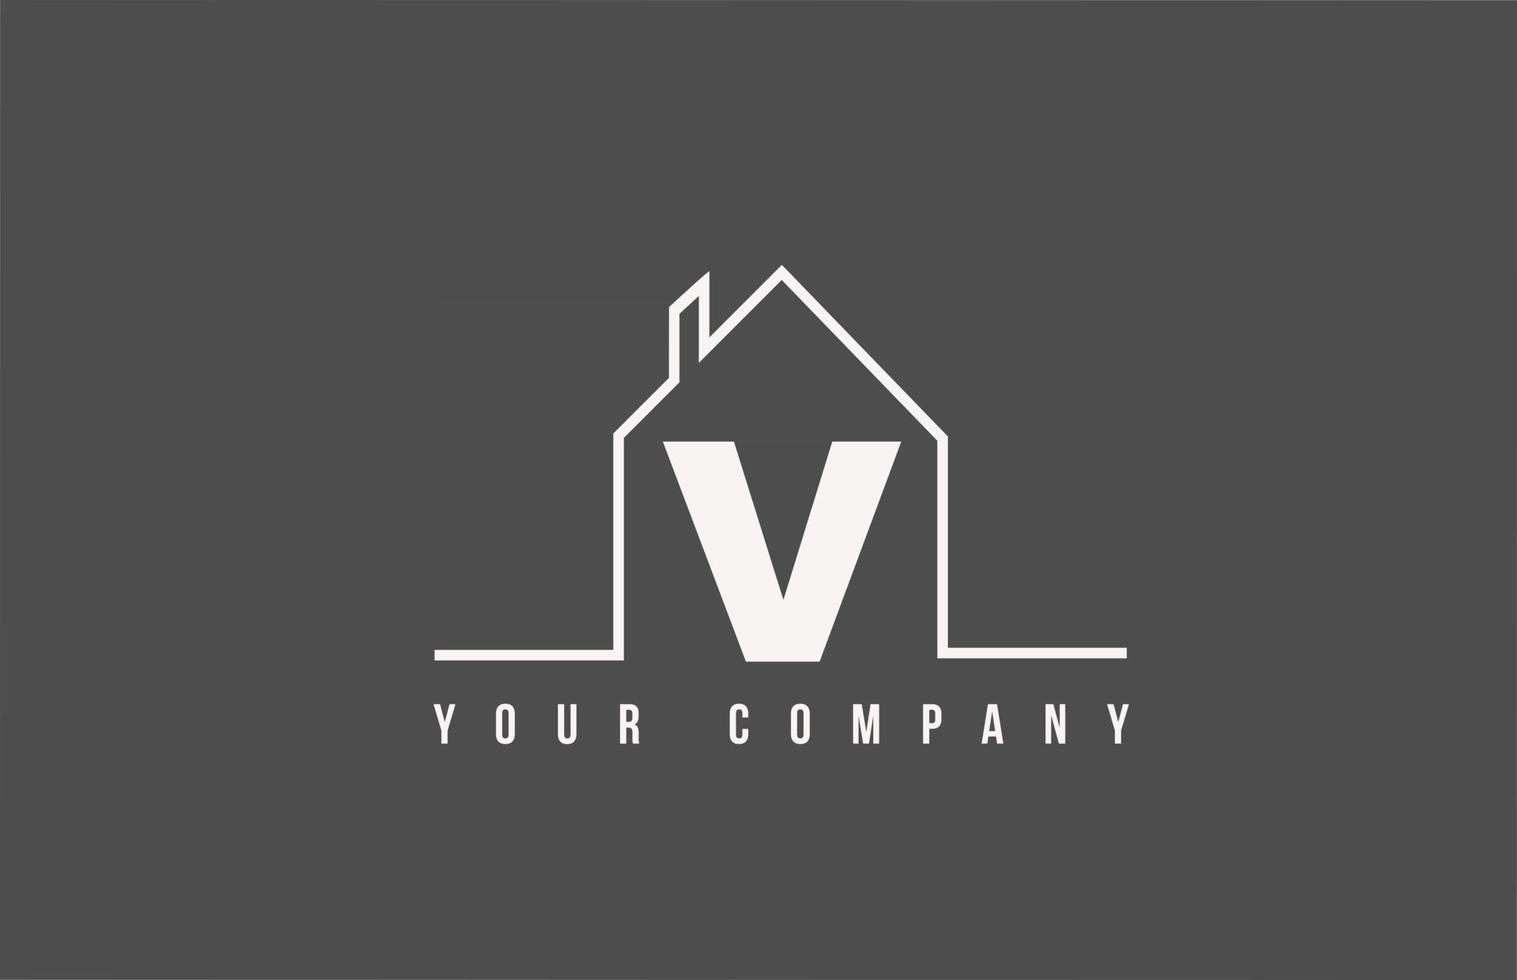 v alfabet letter pictogram logo van een huis. onroerend goed huisontwerp voor bedrijfs- en bedrijfsidentiteit met lijn vector